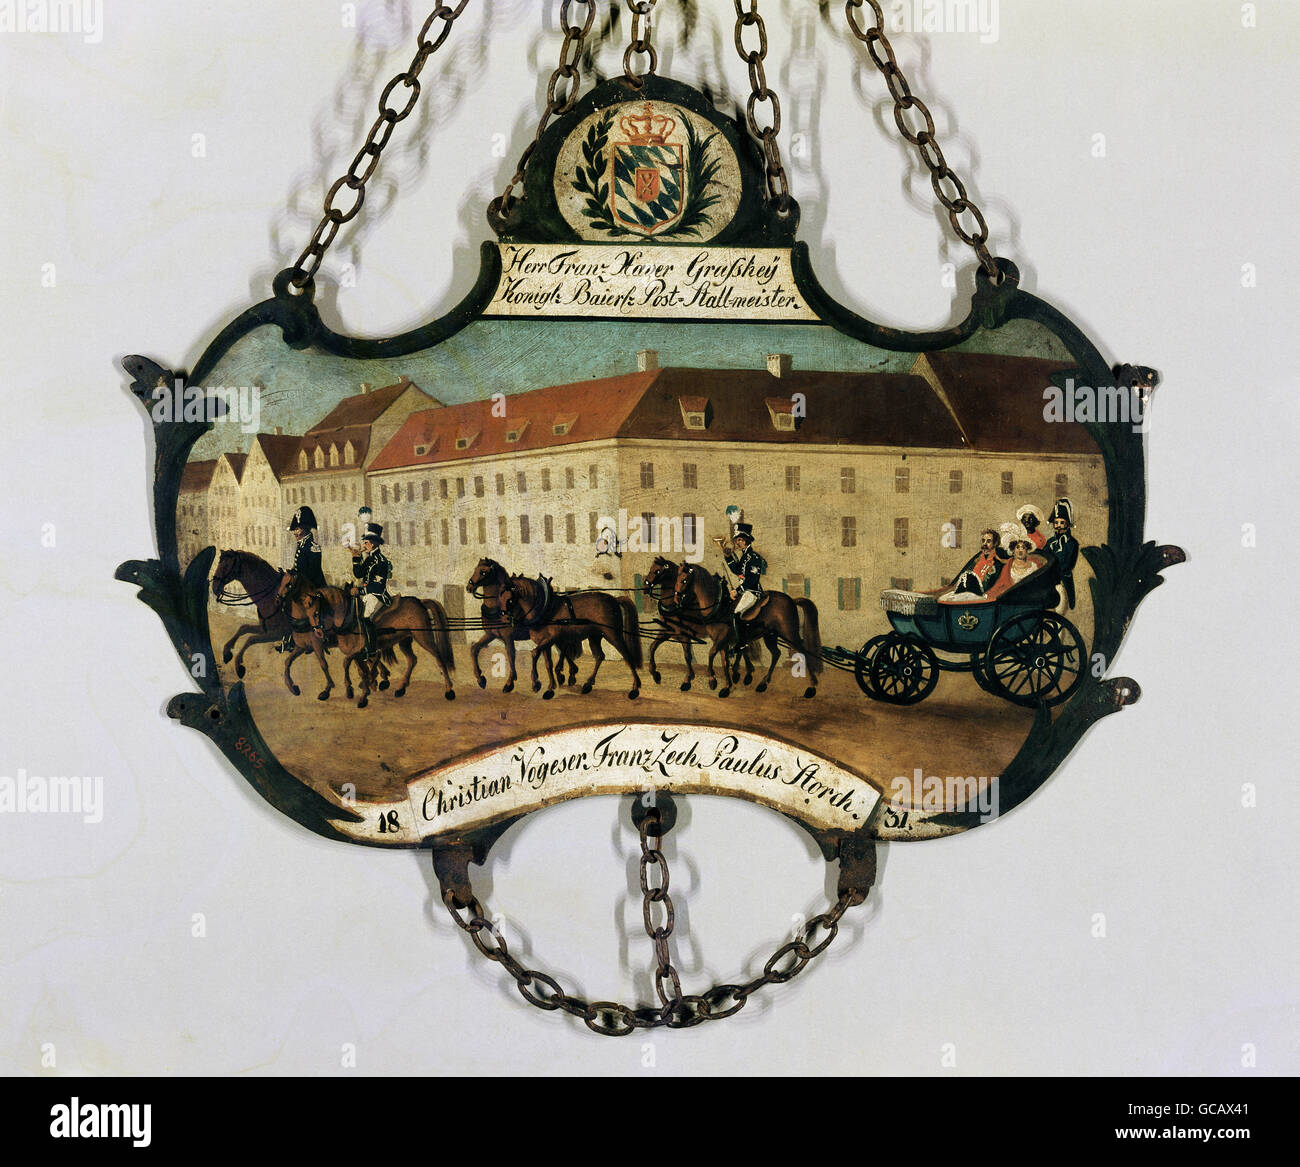 Correo / correo, diligencia, signo de Royal Bavarian Mail Equerry Franz Xaver Grosshej, pintado de hierro forjado, frente, 1831, Derechos adicionales-Clearences-no disponible Foto de stock